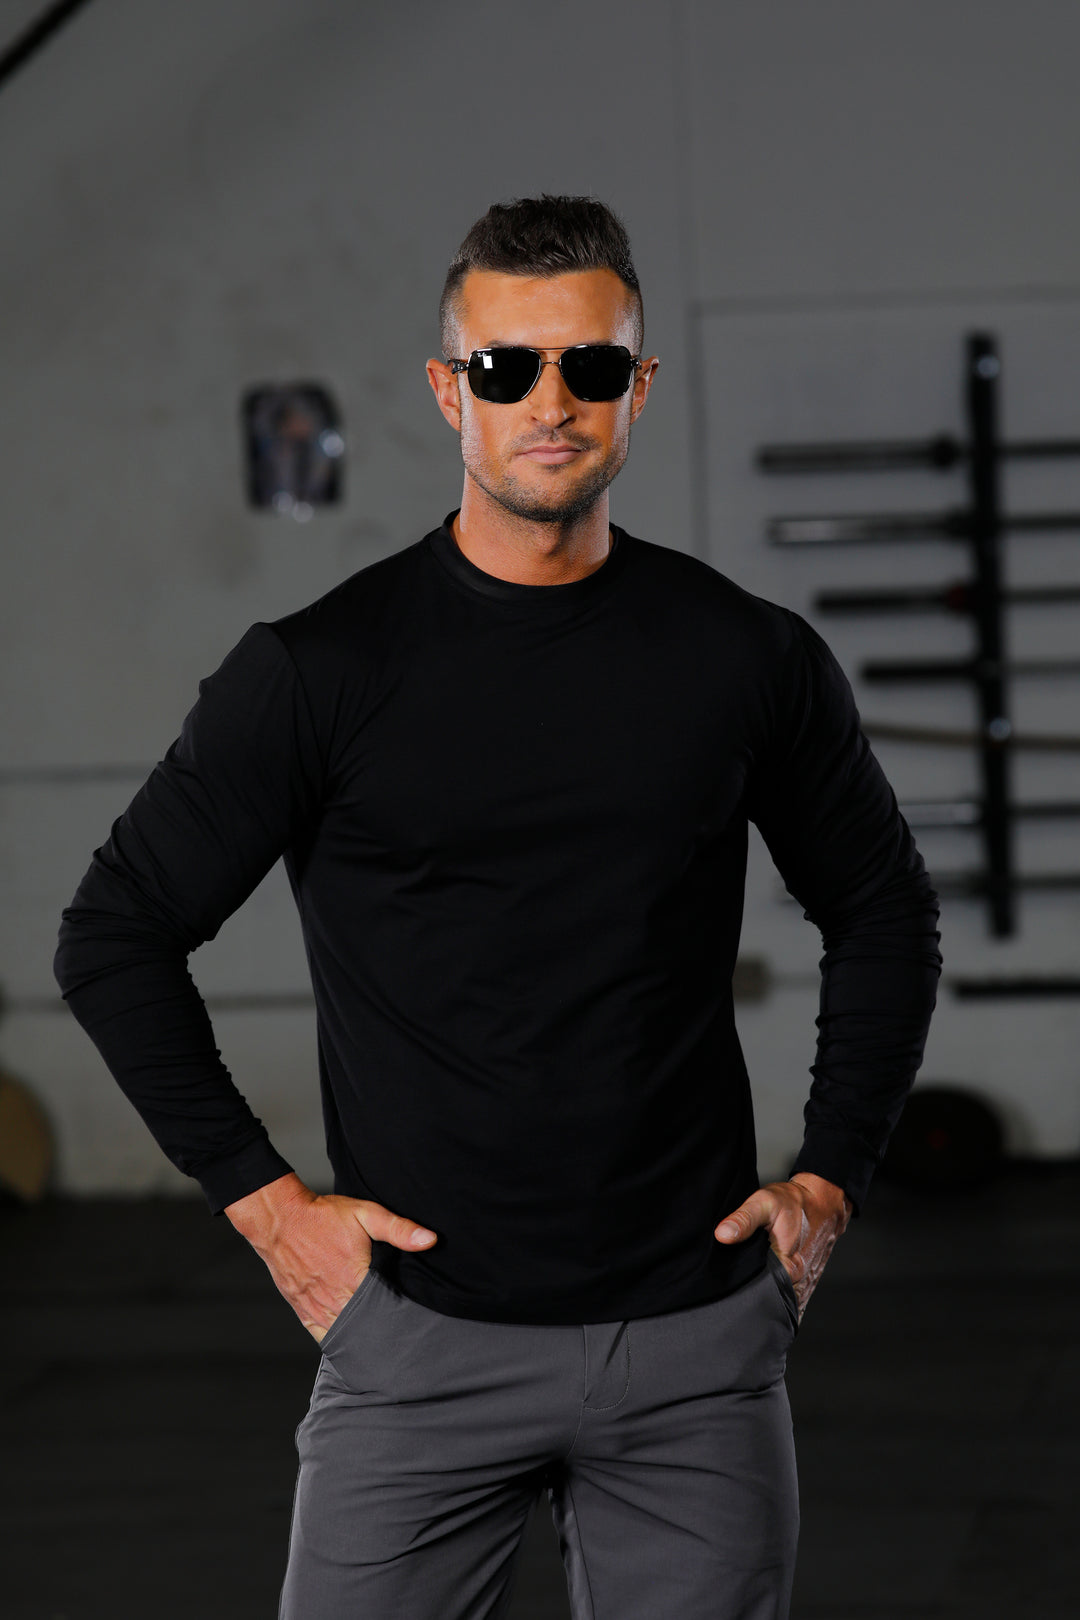 Endeavor Long Sleeve T-Shirt Black - Paul Samuel Design